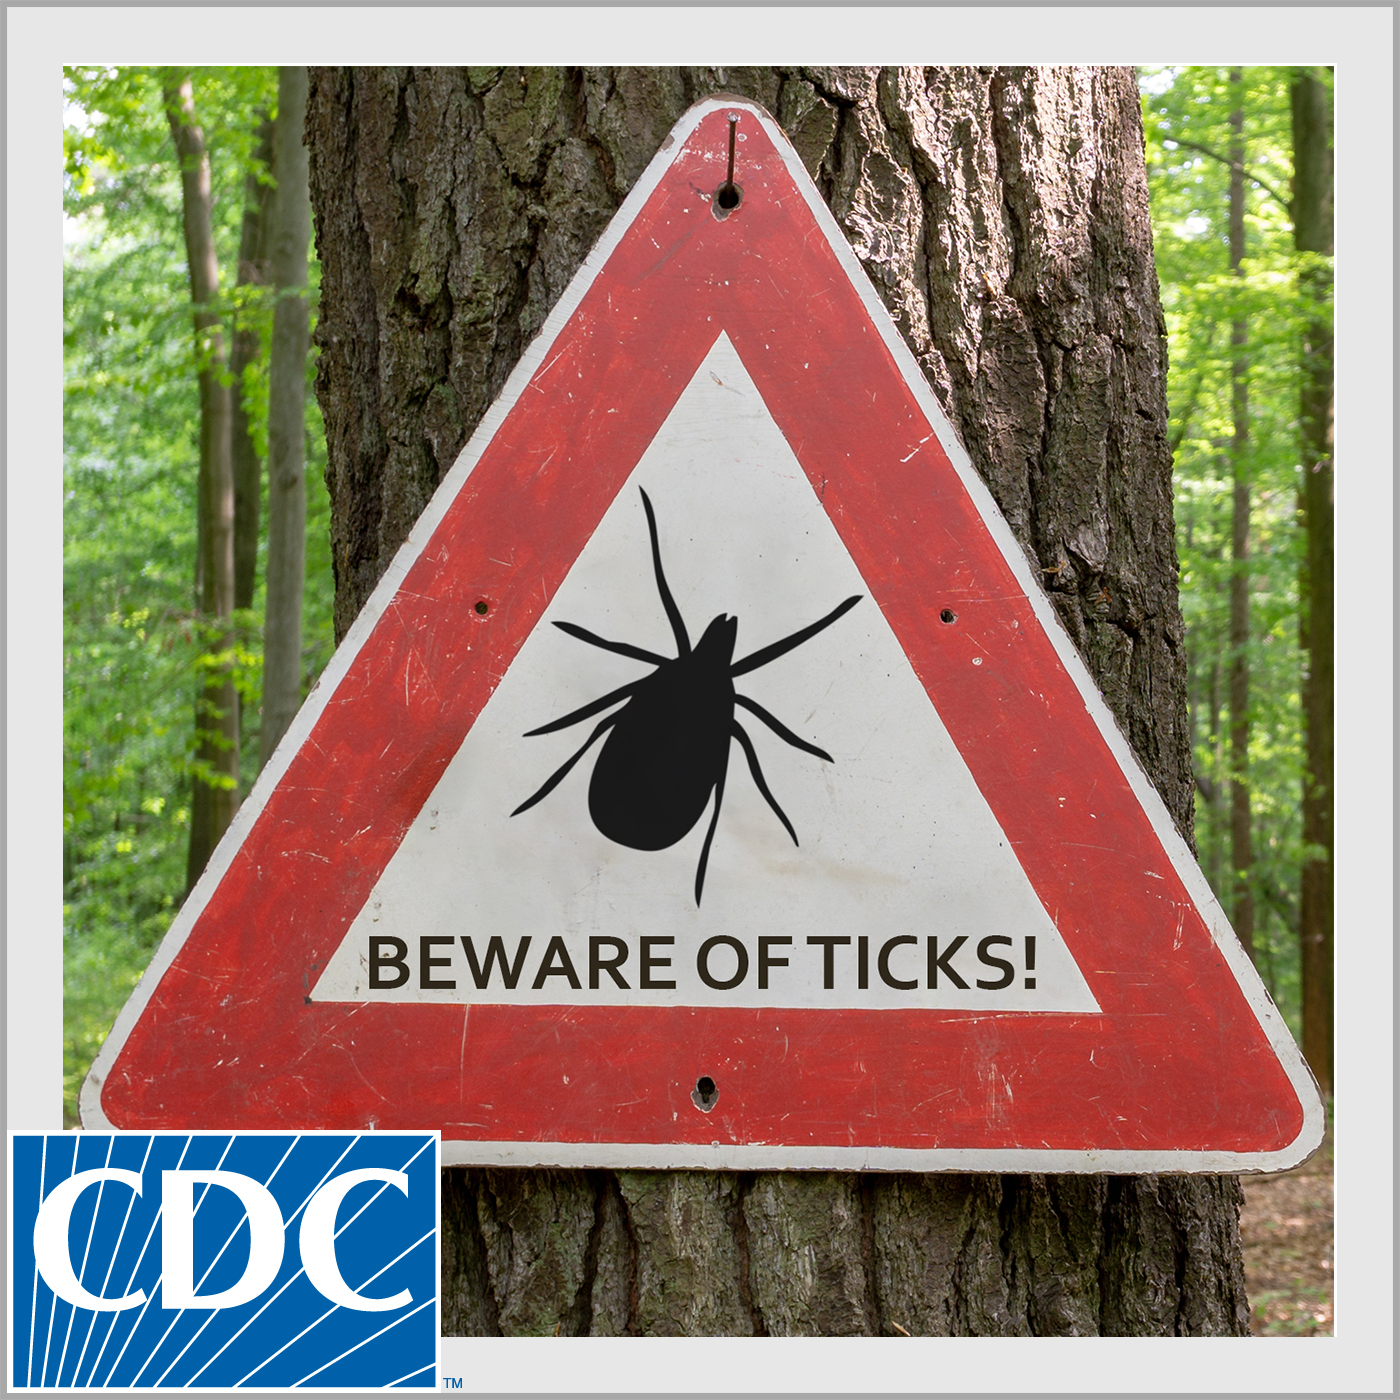 Preventing Tick Bites and Tickborne Diseases